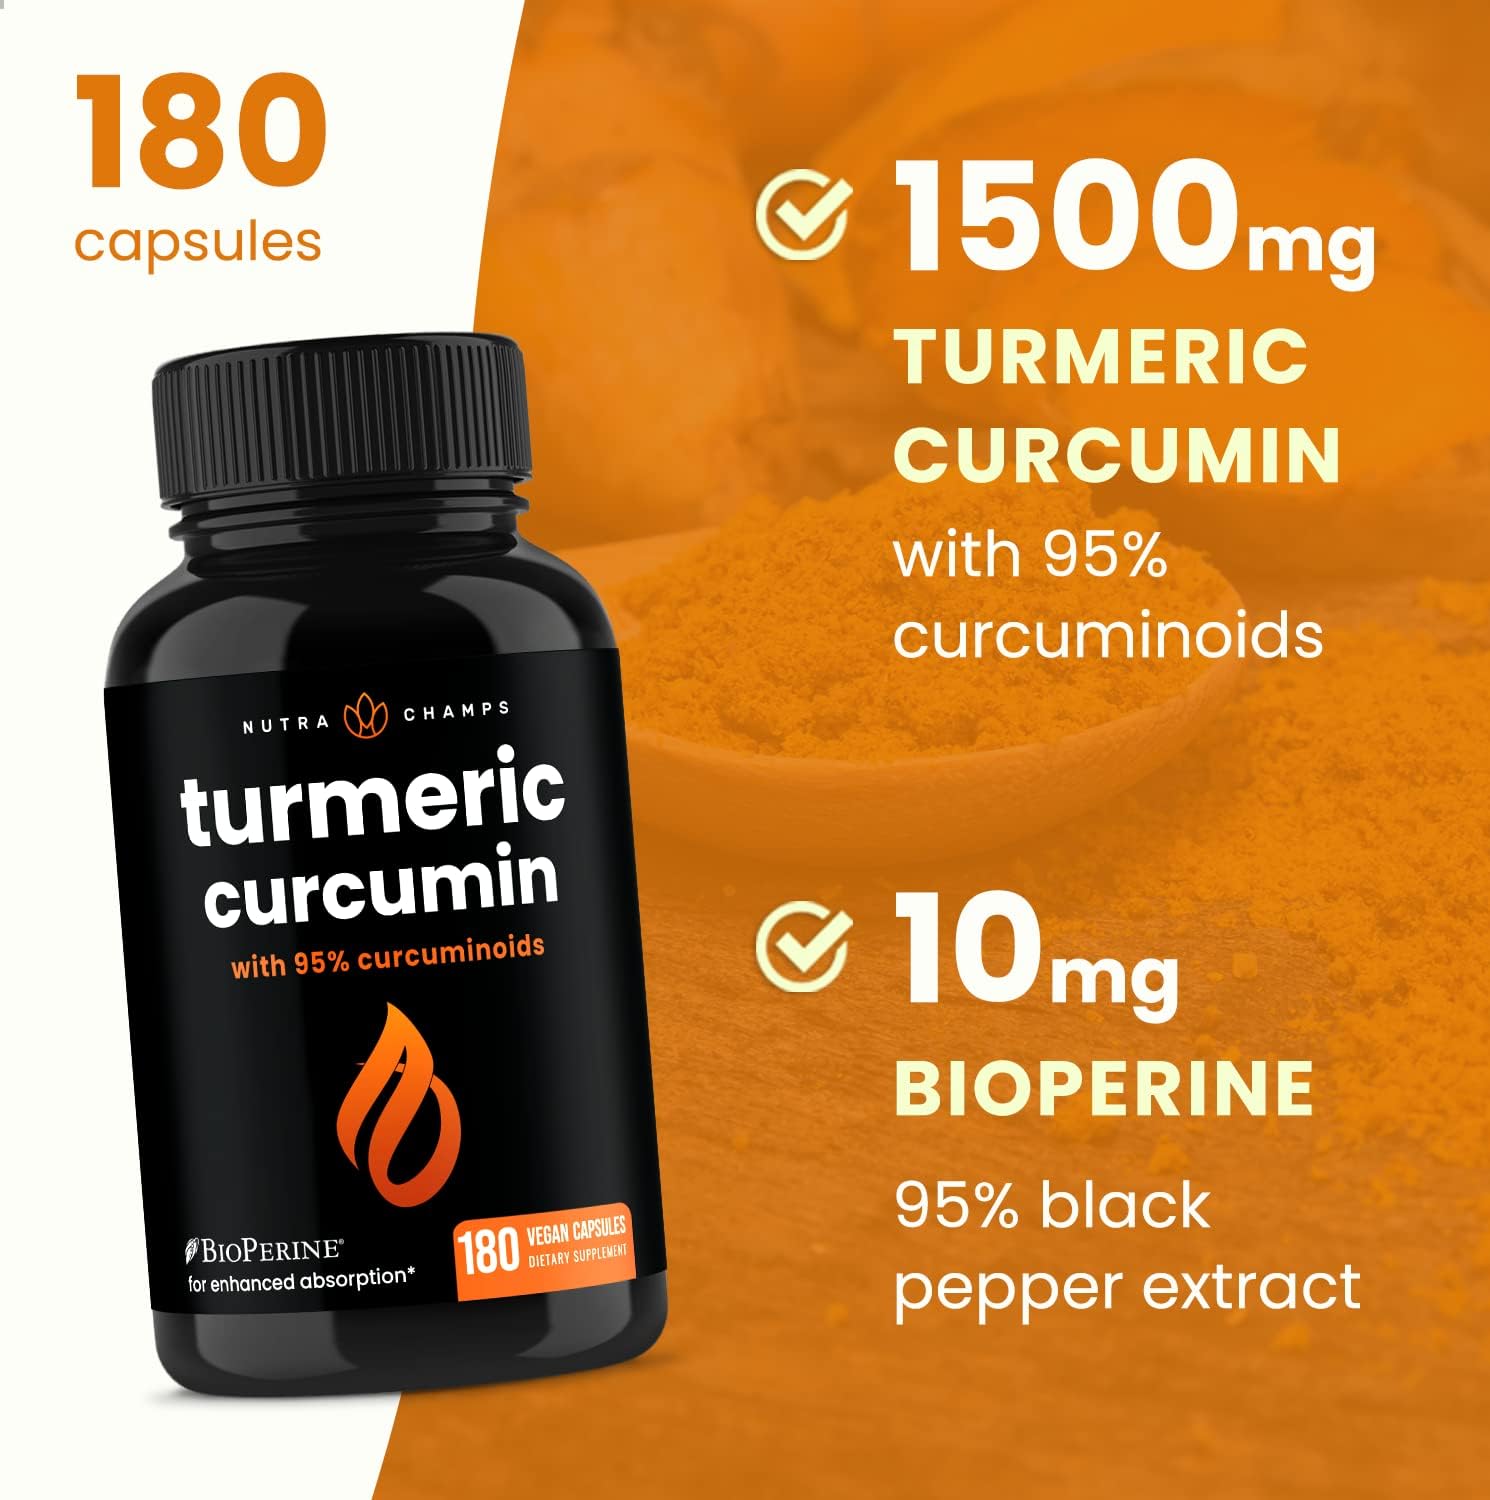 Turmeric Curcumin with Black Pepper Extract 1500mg | 95% Curcuminoids 